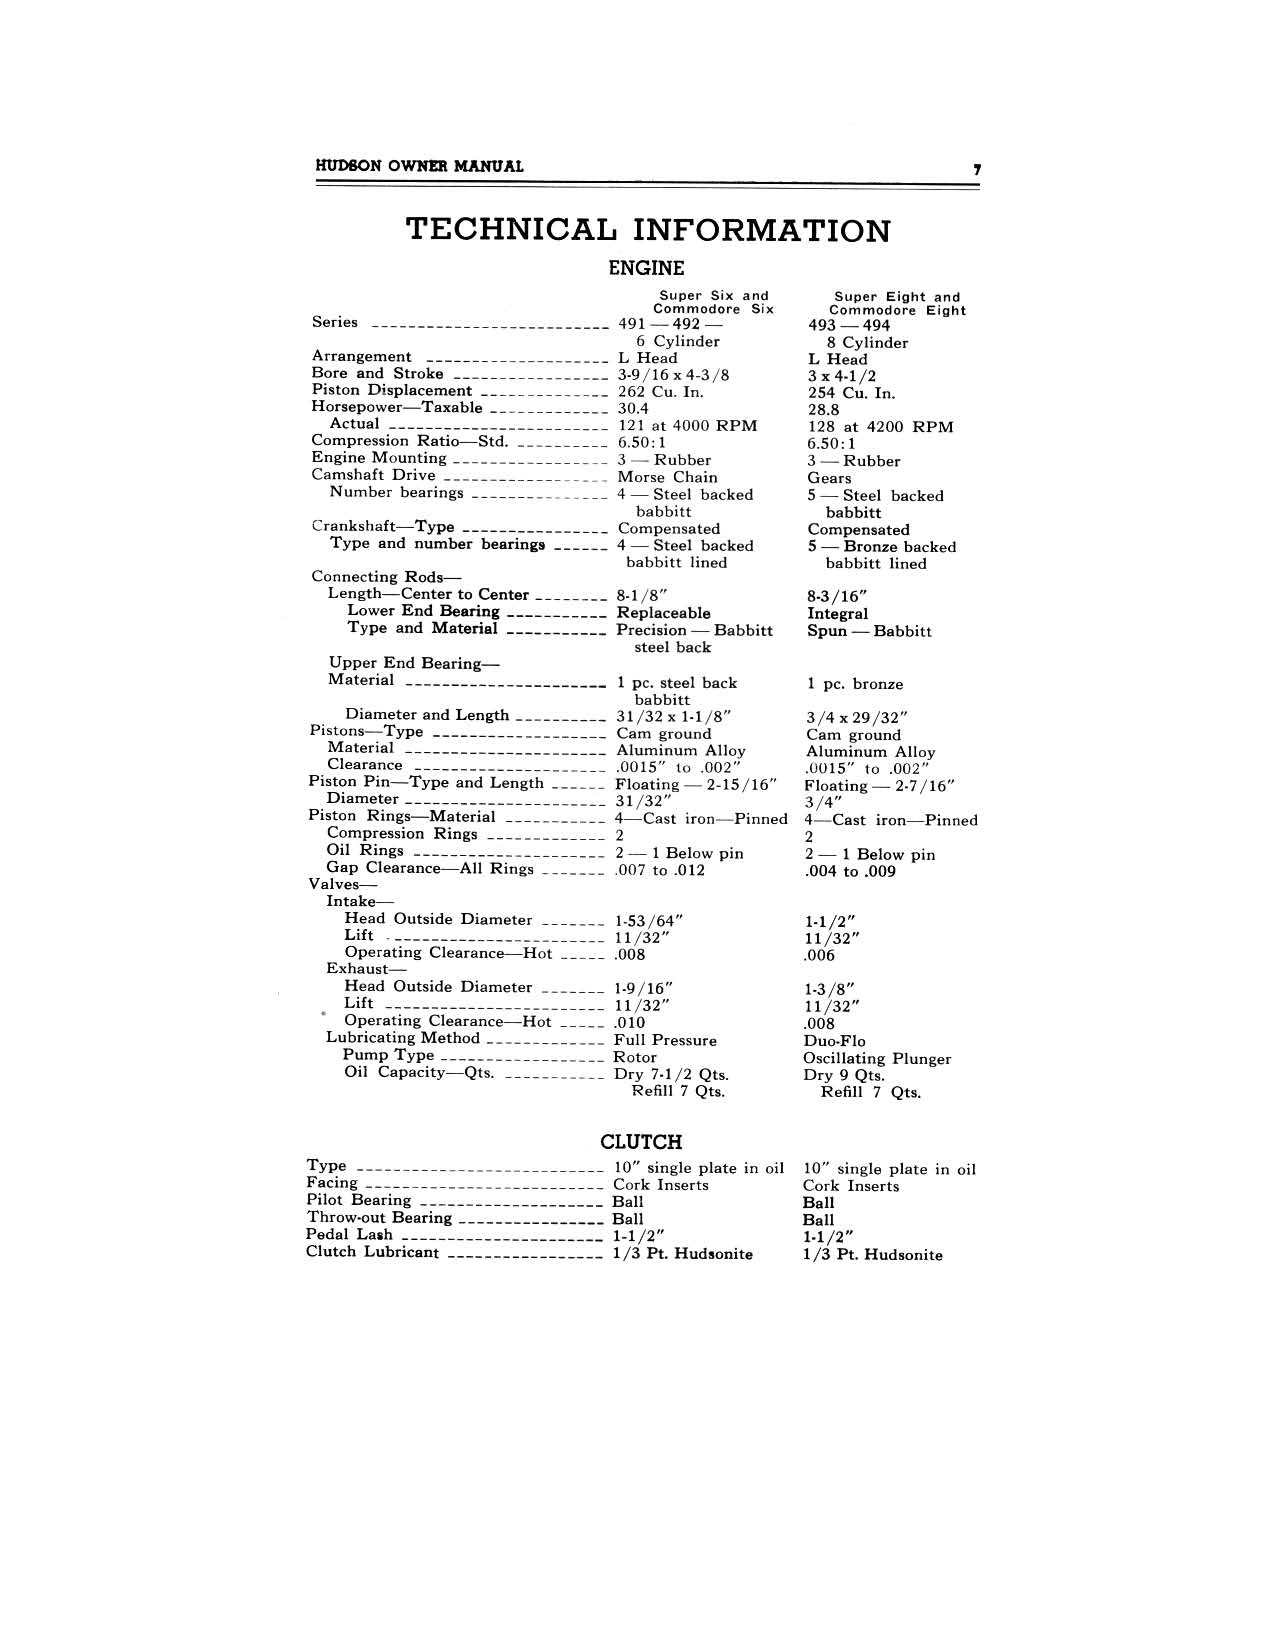 1949 Hudson Owners Manual-09